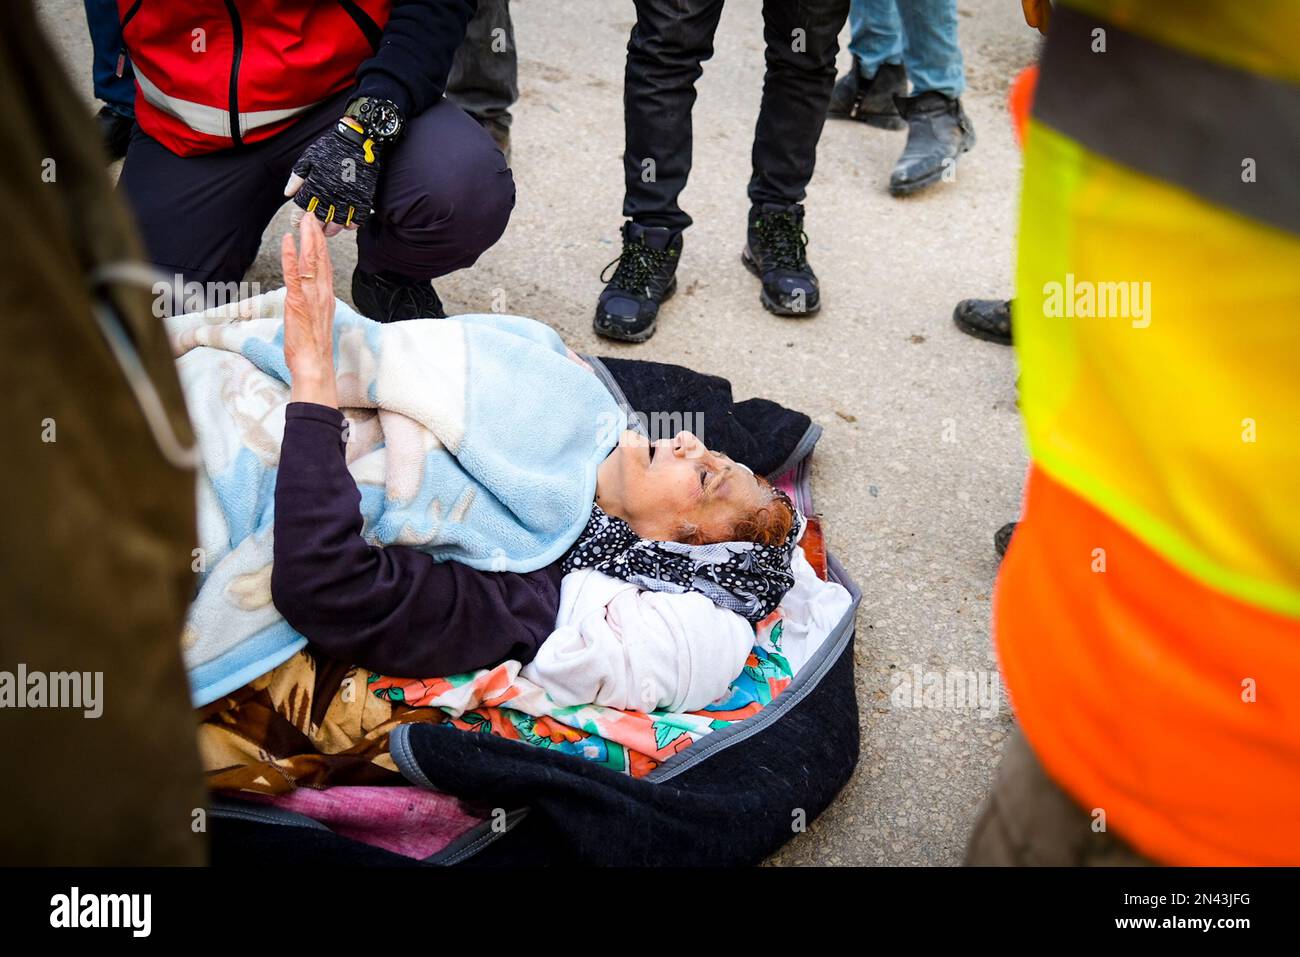 Hatay, Antakya, Türkei. 1. Januar 2020. Eine 65-jährige Frau, die aus den Trümmern gezogen wurde, ruht sich auf dem Boden aus, bevor sie zum Krankenwagen getragen wird. Die Menschen bitten um mehr Hilfe im Antakya-Viertel Hatay, einer der Städte, in denen die größten Trümmer erlebten. Die Türkei erlebte das größte Erdbeben dieses Jahrhunderts in der Grenzregion zu Syrien. Das Erdbeben wurde bei 7,7 gemessen. (Kreditbild: © Murat Kocabas/SOPA Images via ZUMA Press Wire) NUR REDAKTIONELLE VERWENDUNG! Nicht für den kommerziellen GEBRAUCH! Stockfoto